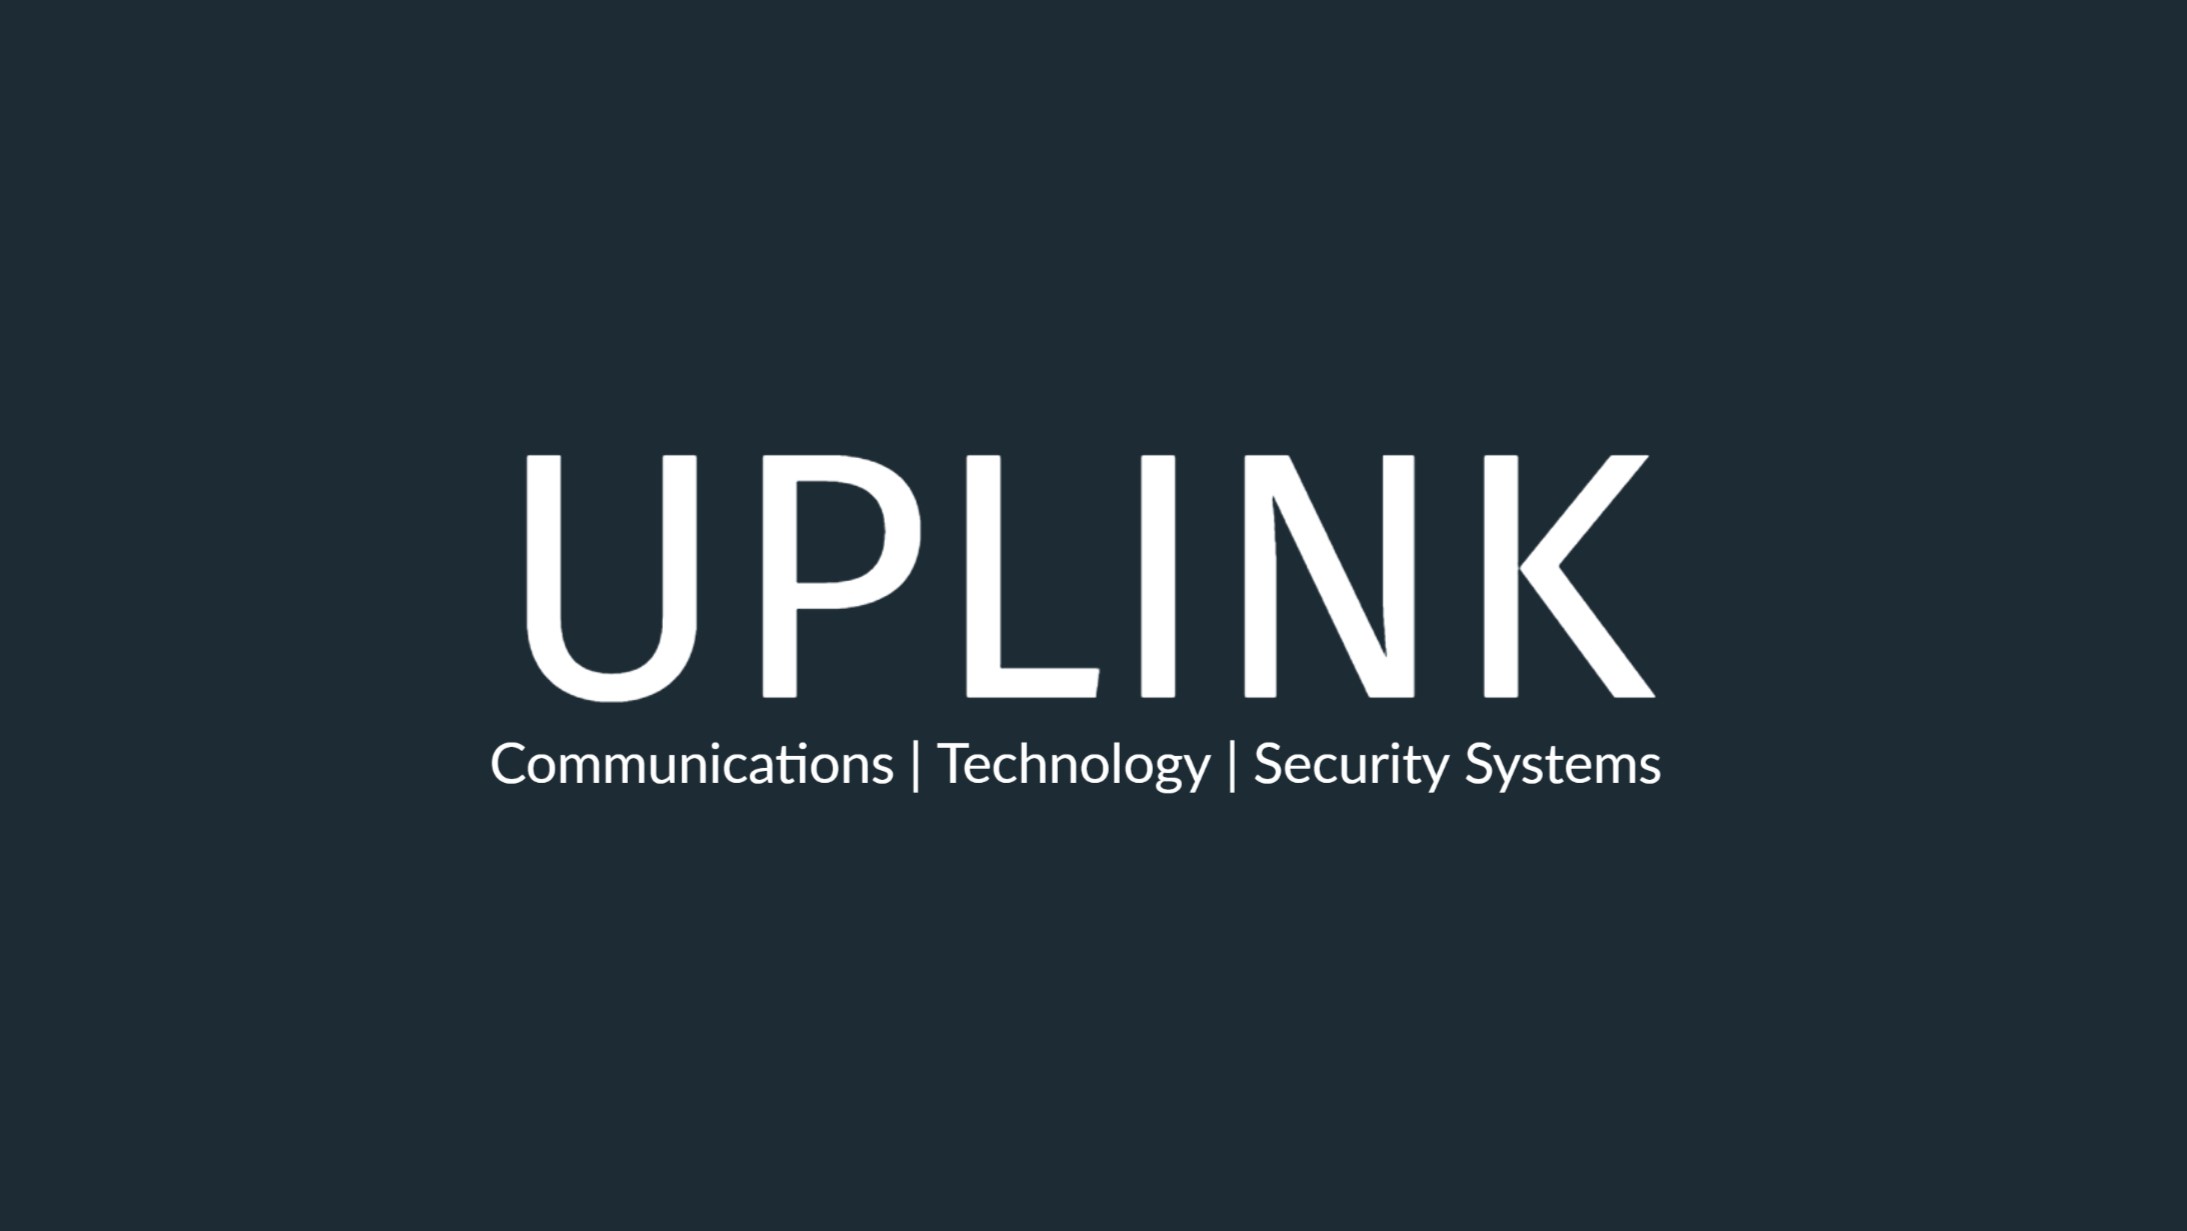 uplink logo